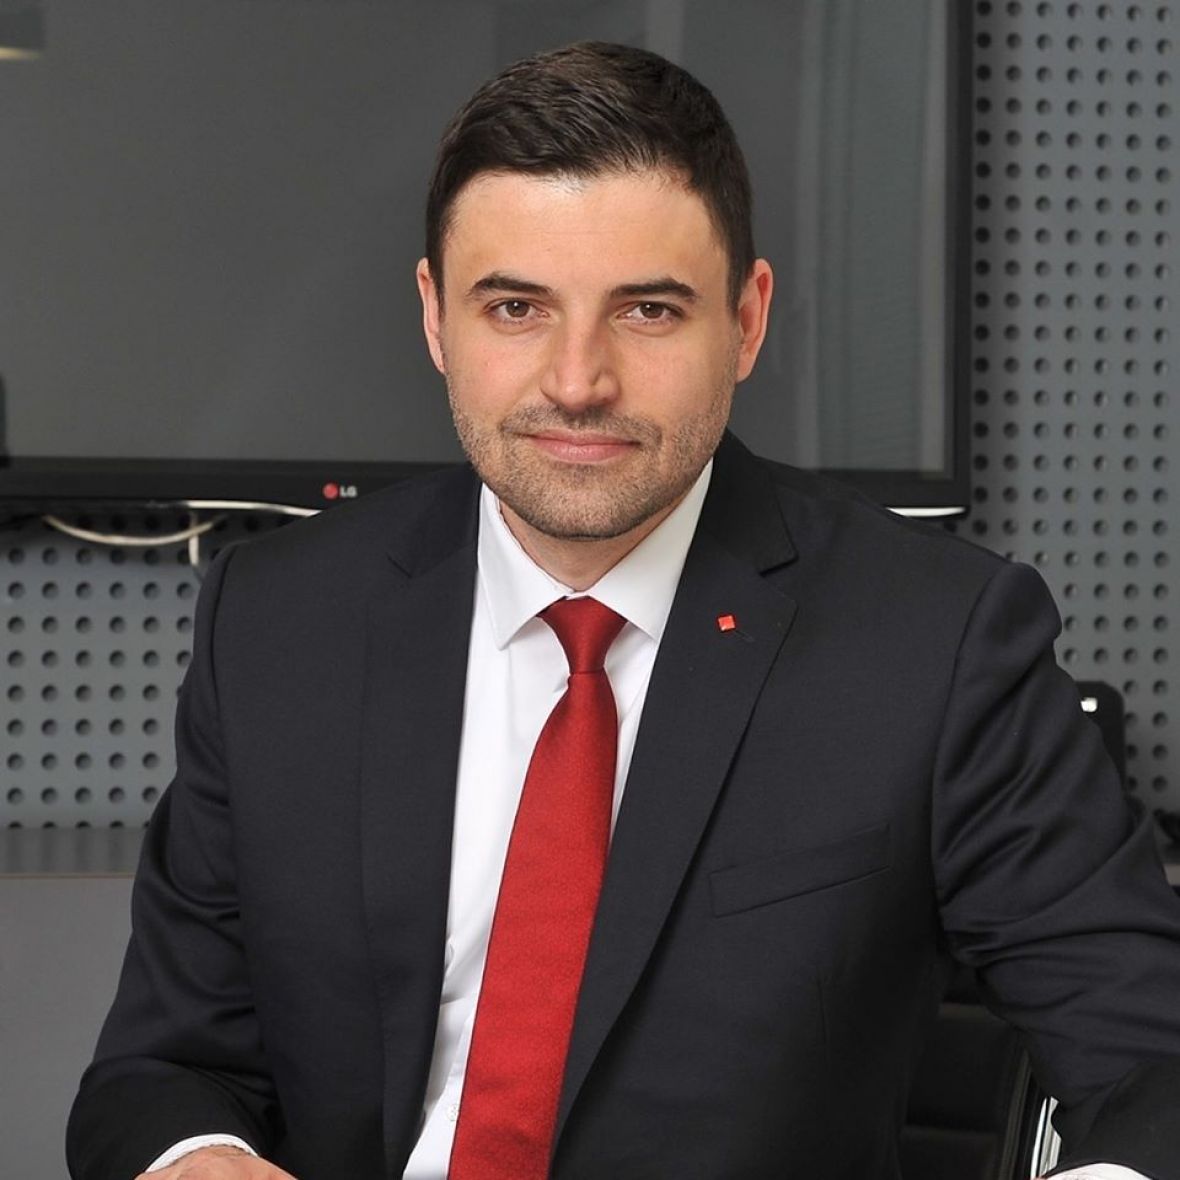 Nakon debakla: Davor Bernardić podnio ostavku na mjesto predsjednika SDP Hrvatske